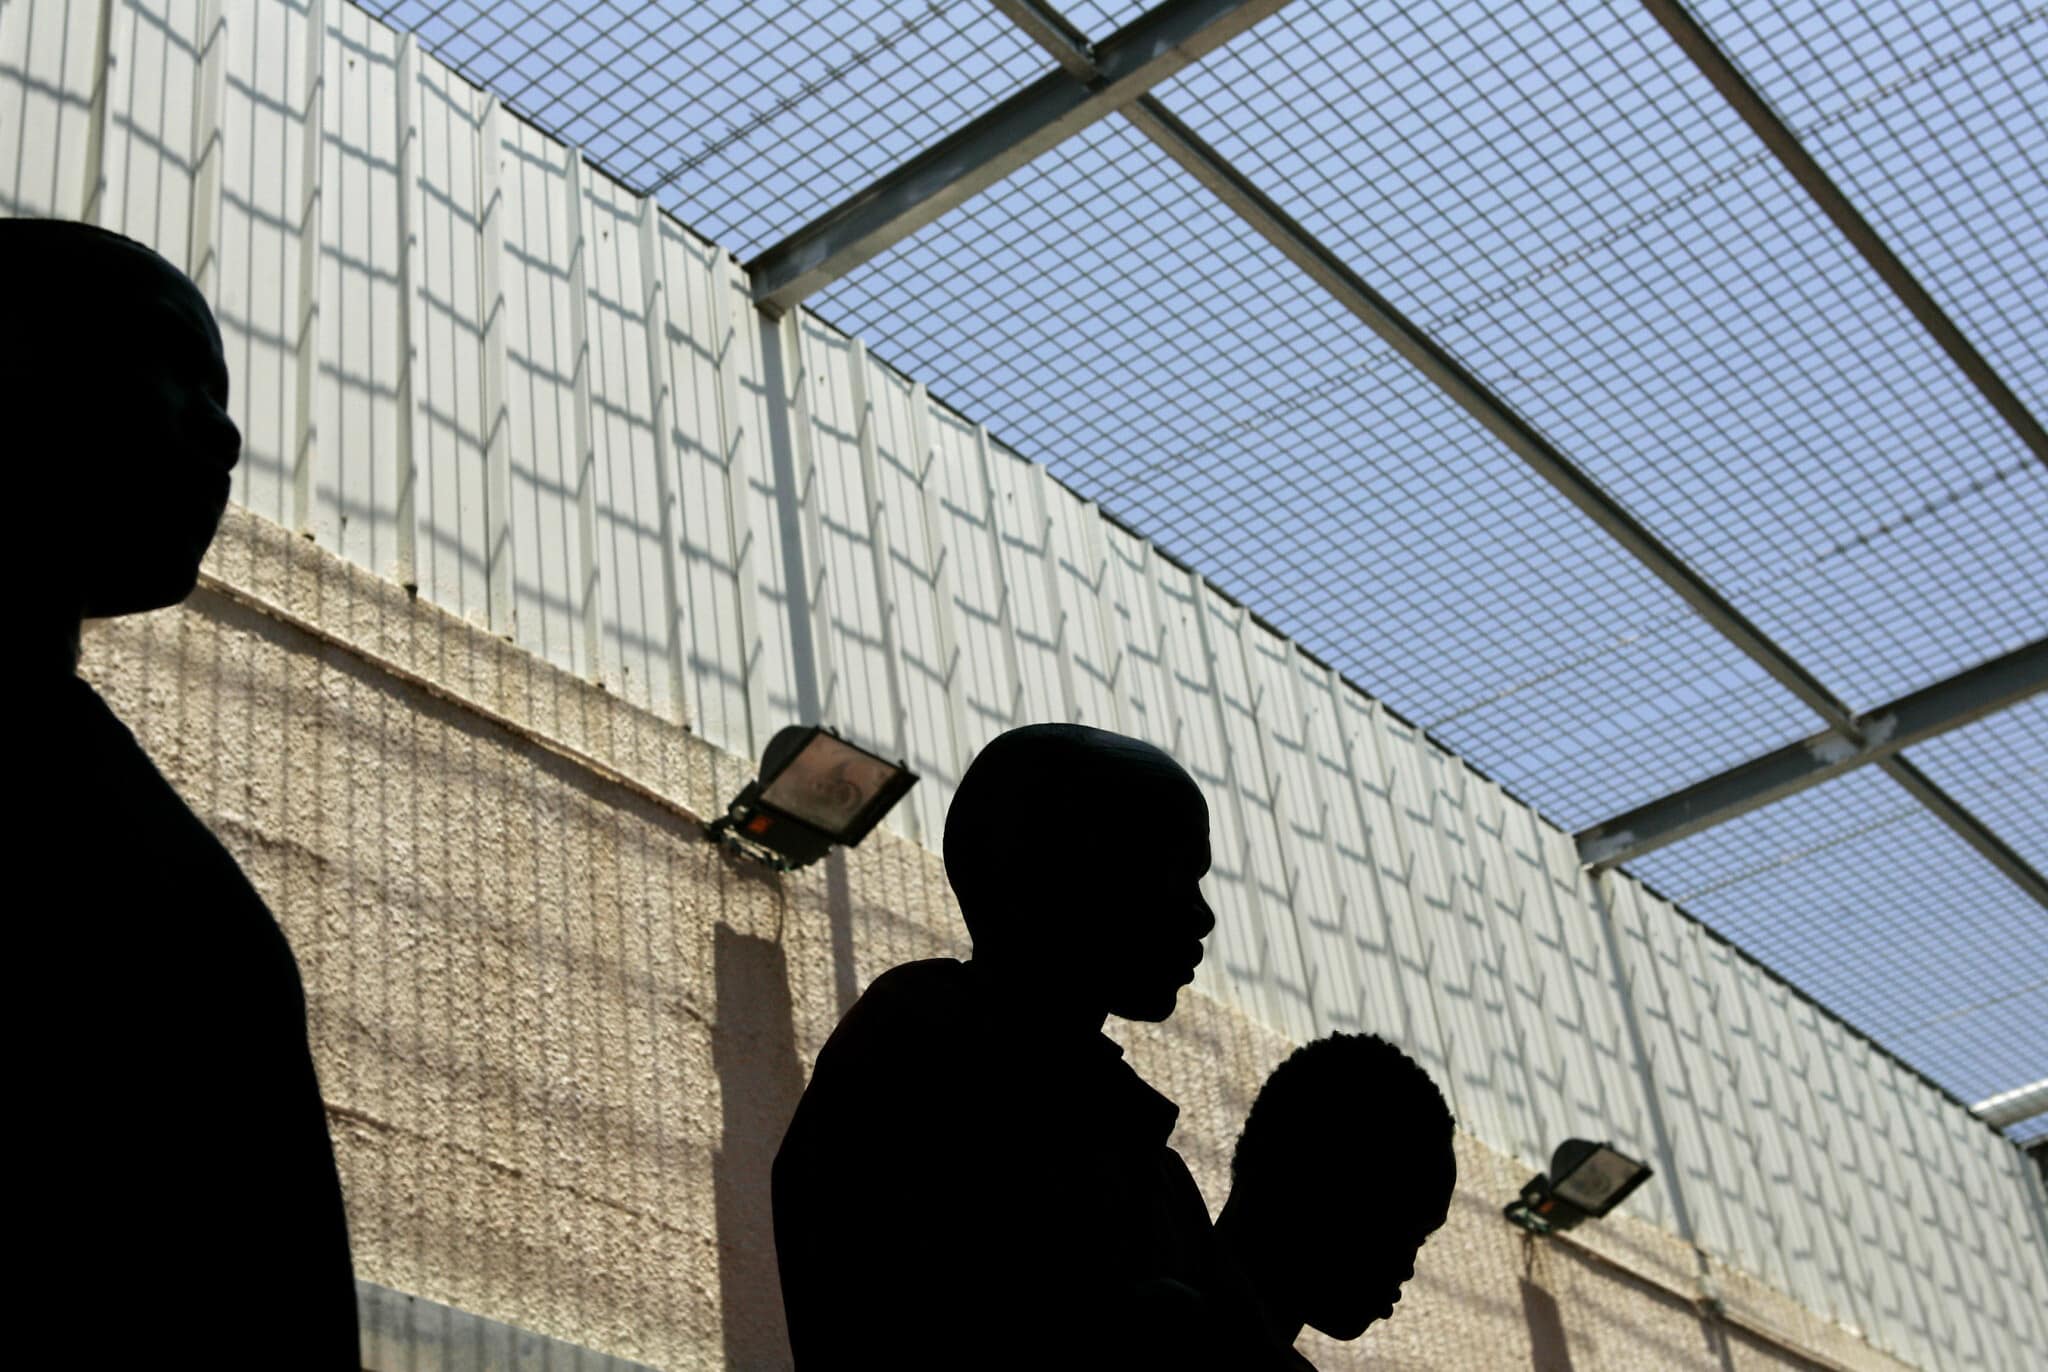 פליטים מסודאן בחצר כלא מעשיהו ברמלה, 28 במאי 2006 (צילום: Frayer)